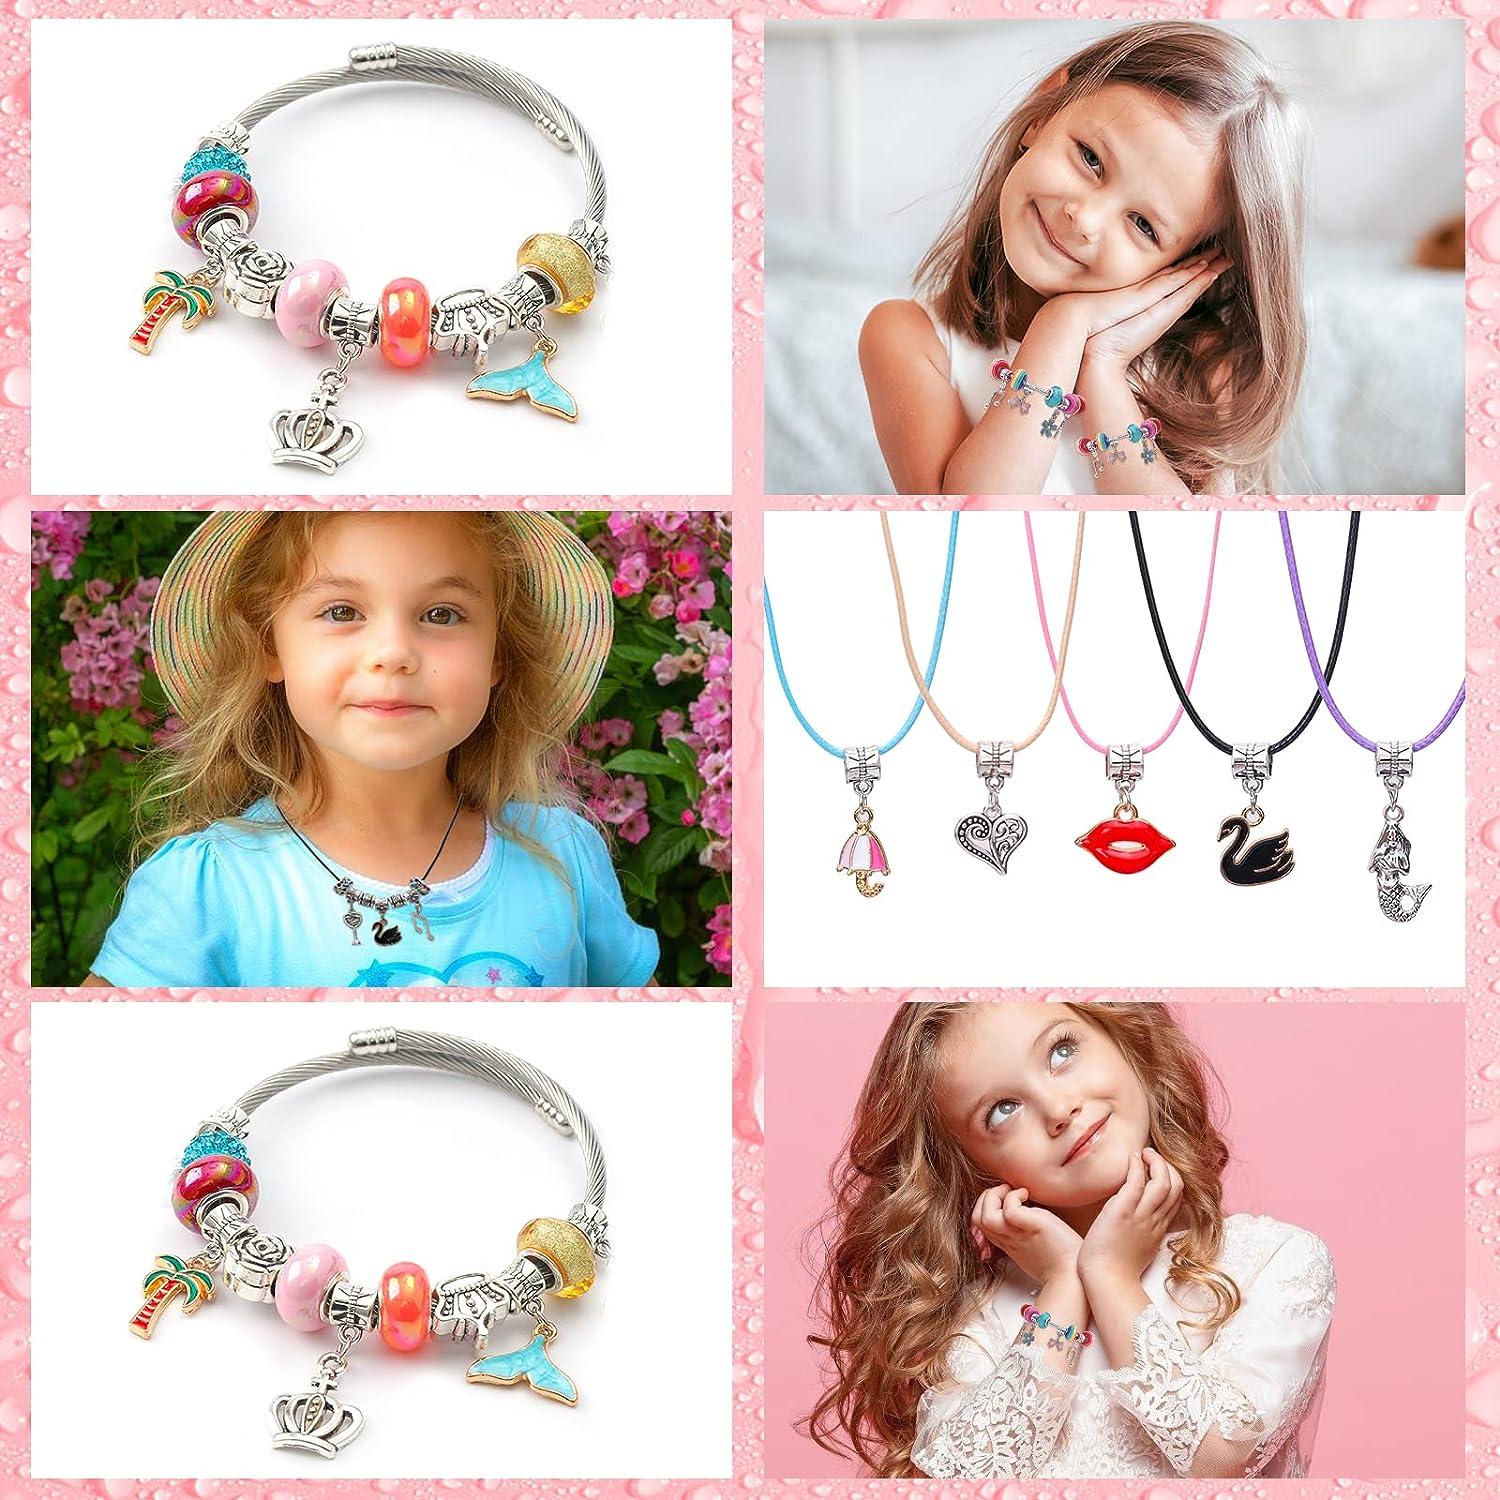 DIY Bracelet Making Kit for Girls, Charm Bracelets Kit with Beads, Pendant  Charms, Bracelets and Necklace String for Bracelets Craft & Necklace  Making, Gift Idea for Teen Girls 